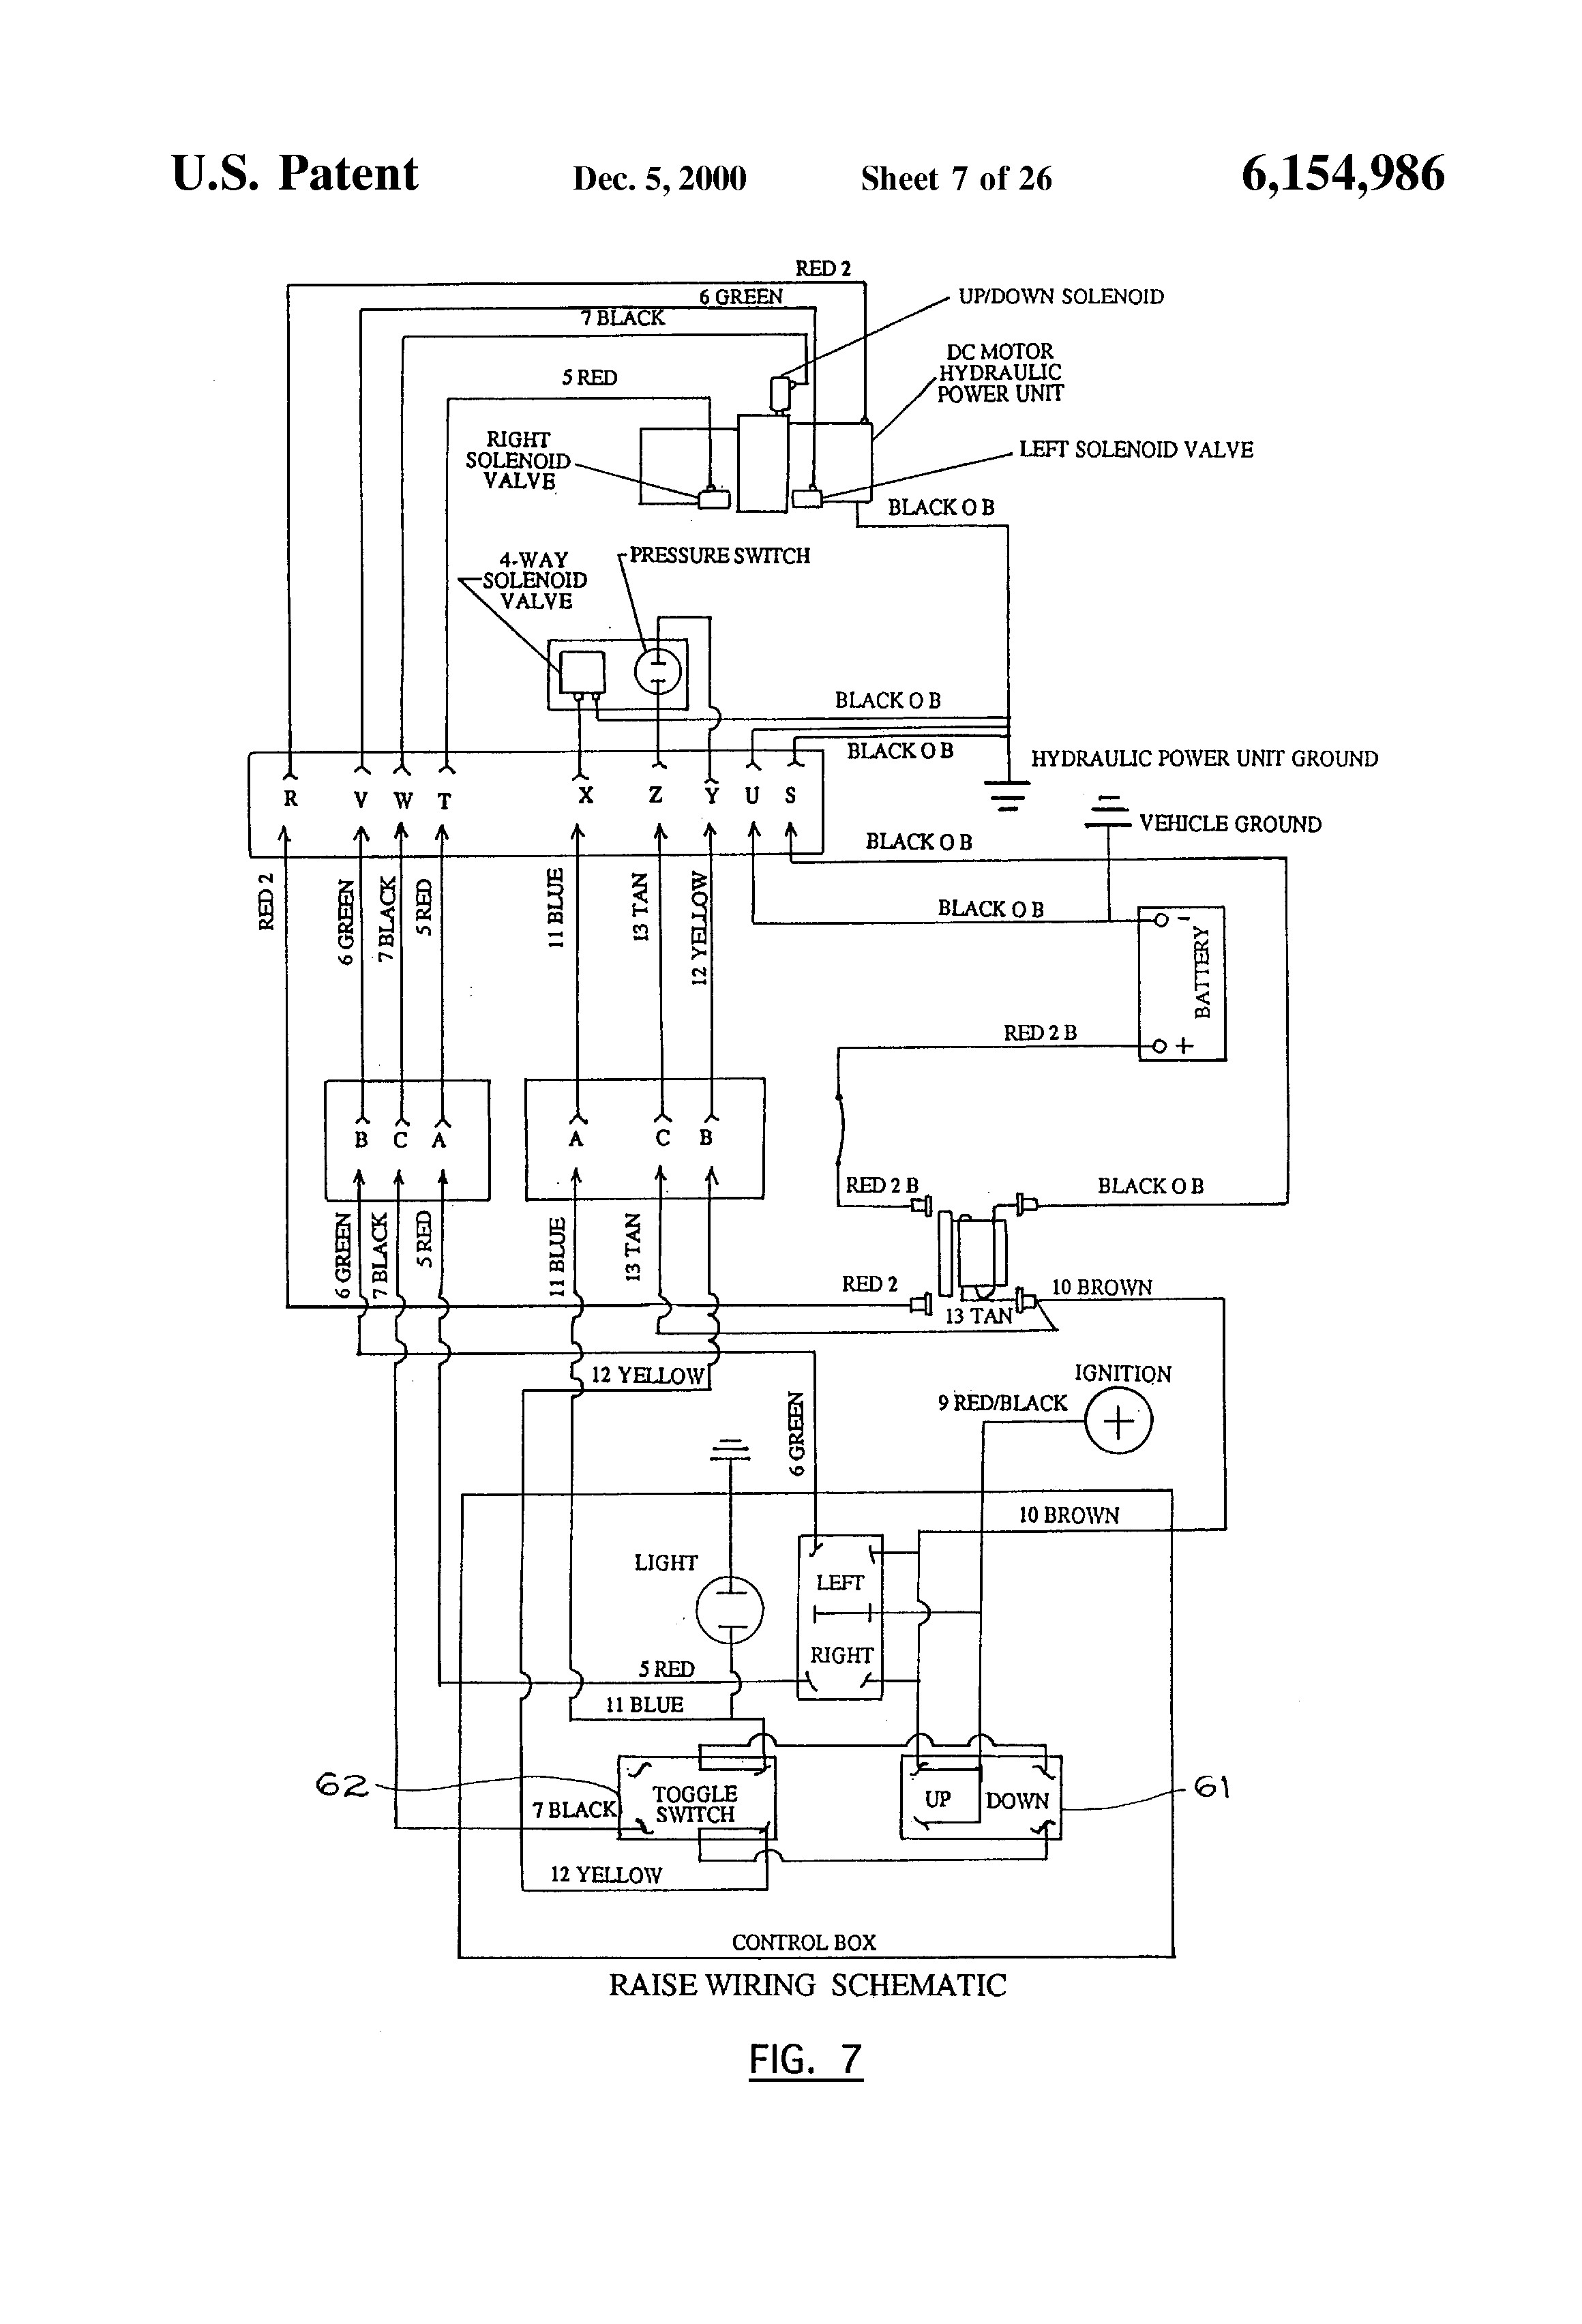 Western Unimount Wiring Diagram from schematron.org